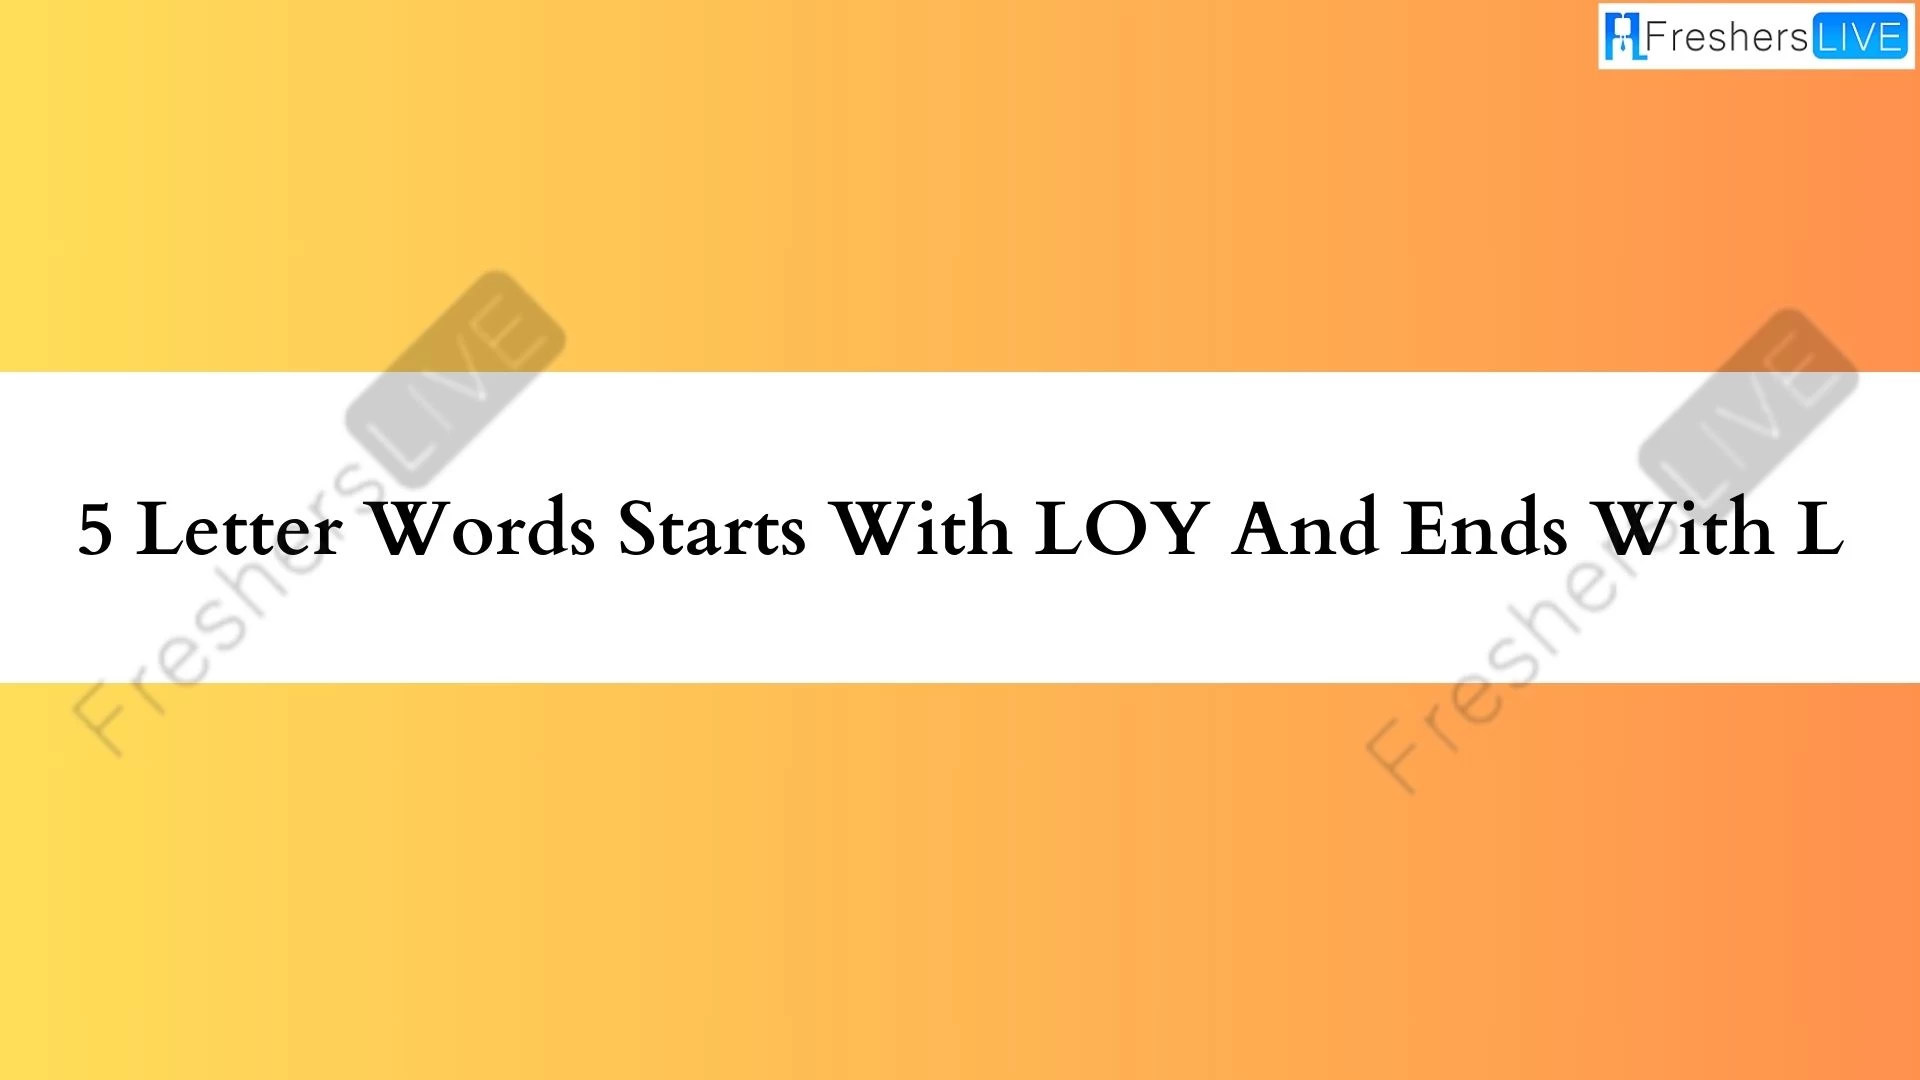 Palabras de 5 letras comenzando con LOY y terminando con L.